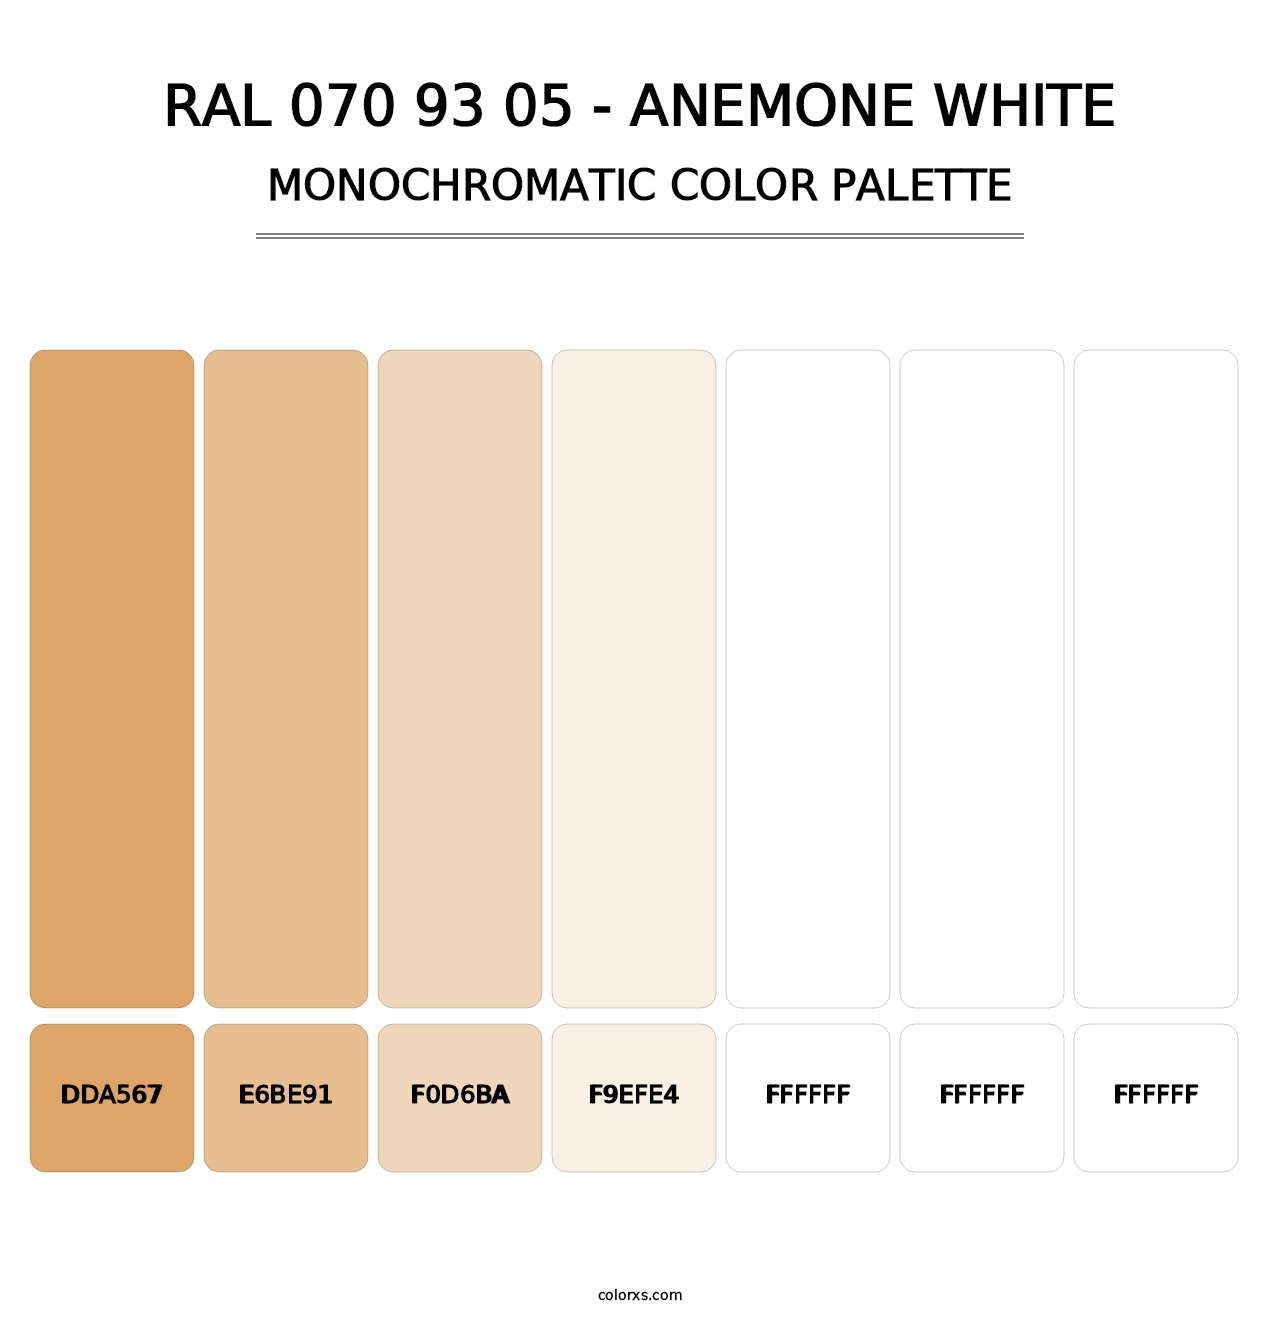 RAL 070 93 05 - Anemone White - Monochromatic Color Palette